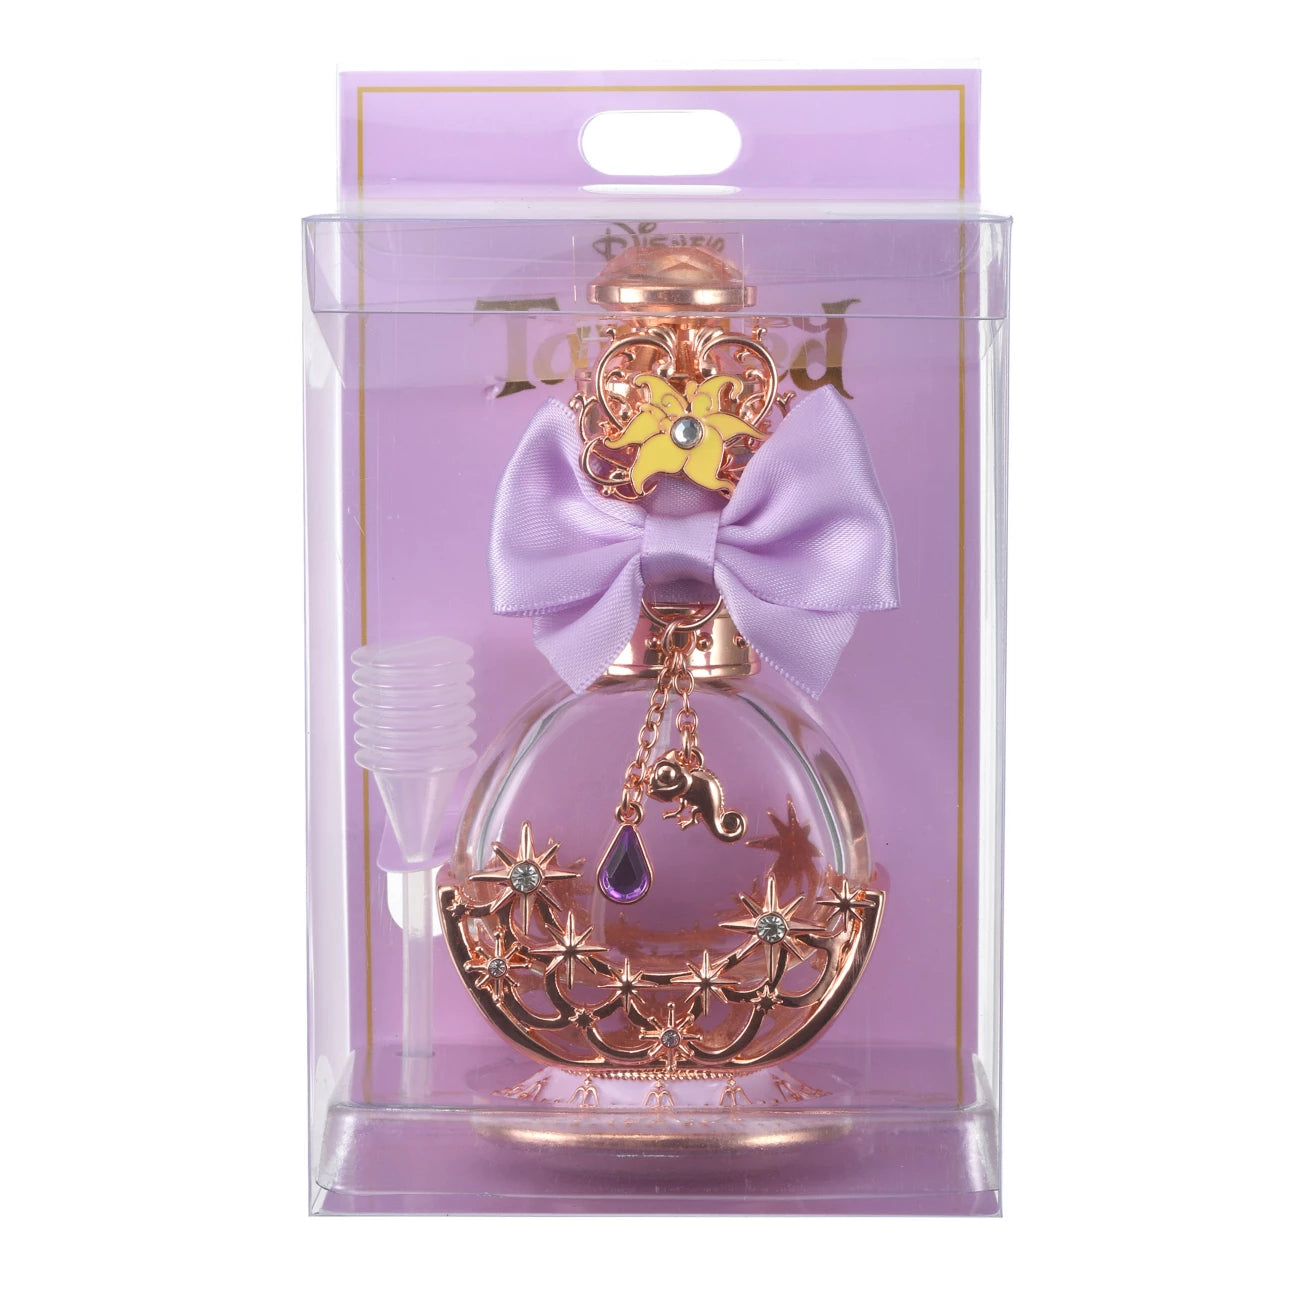 Rapunzel perfume spray bottle [In stock]